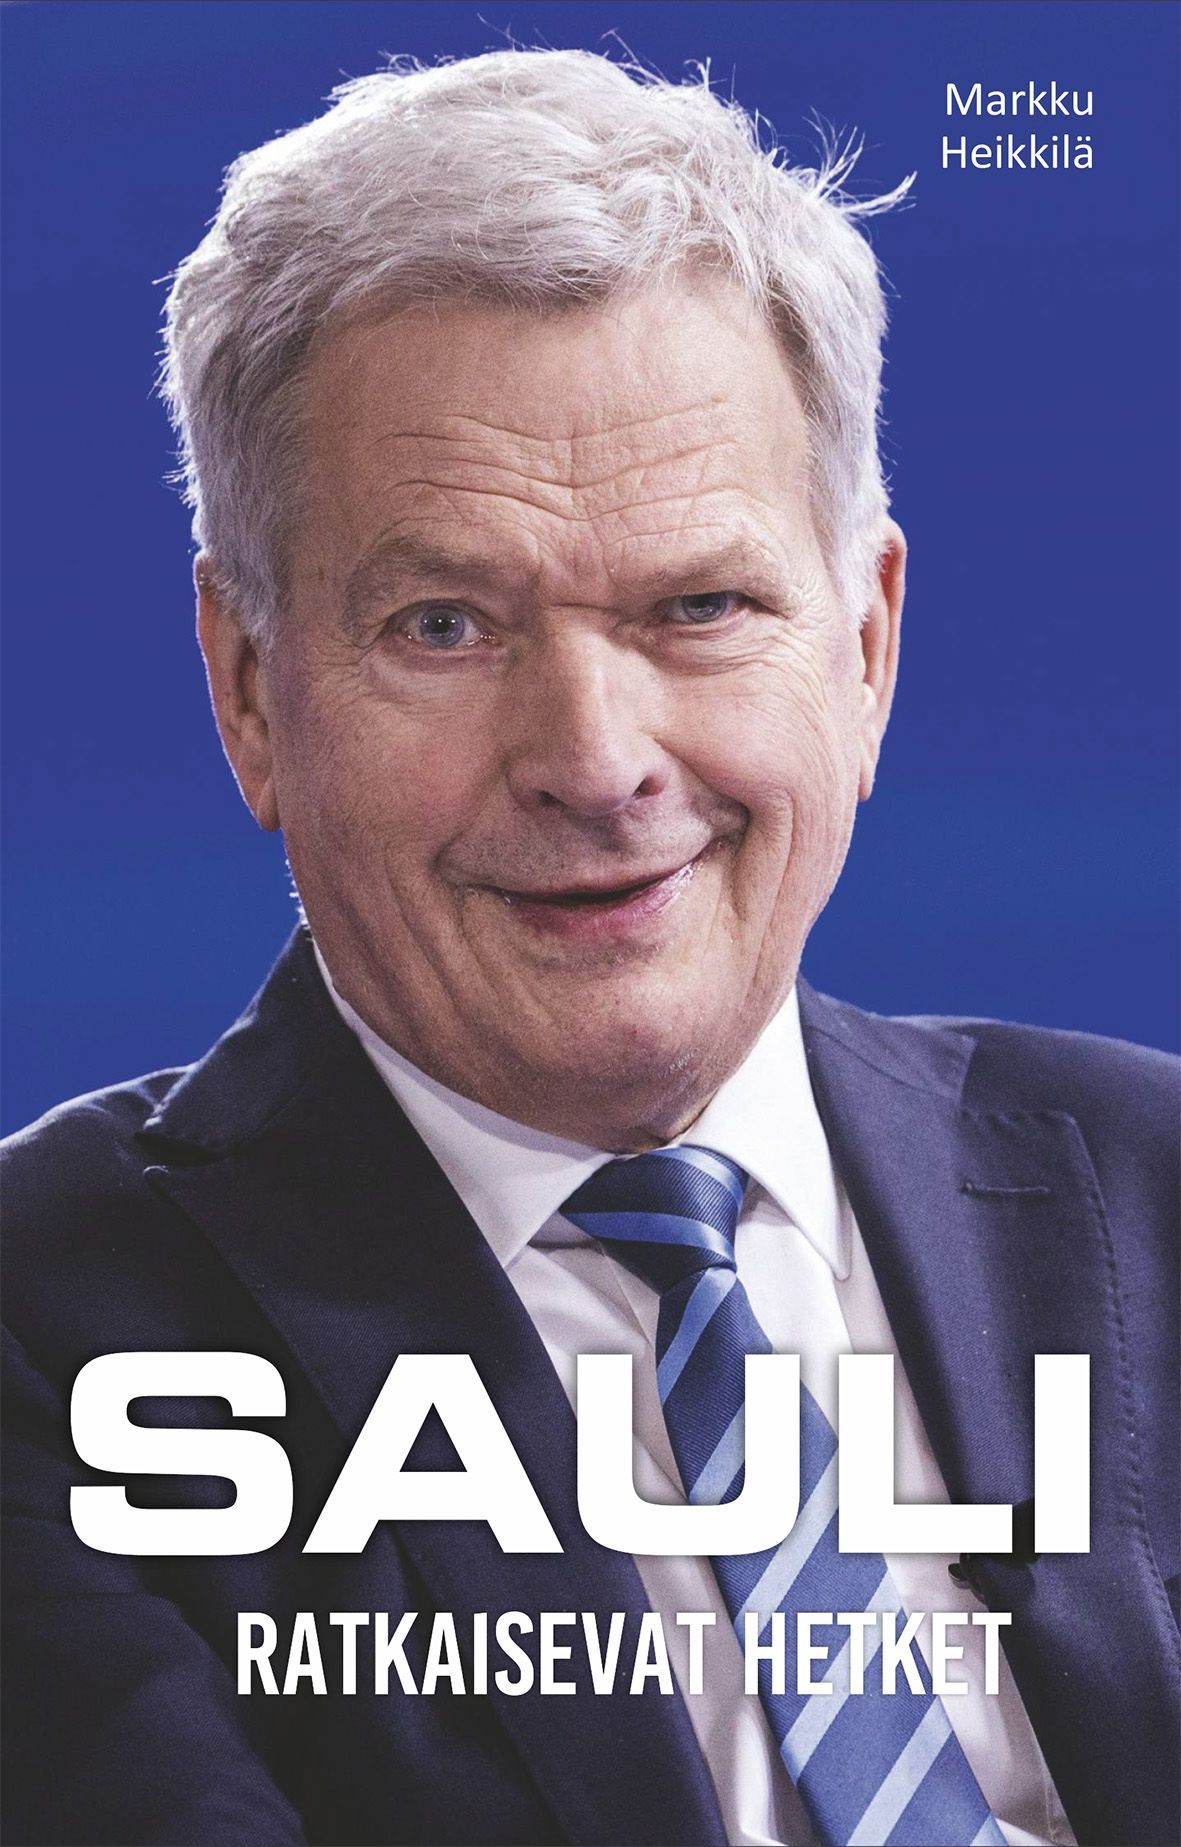 Markku Heikkilä : Sauli - Ratkaisevat hetket